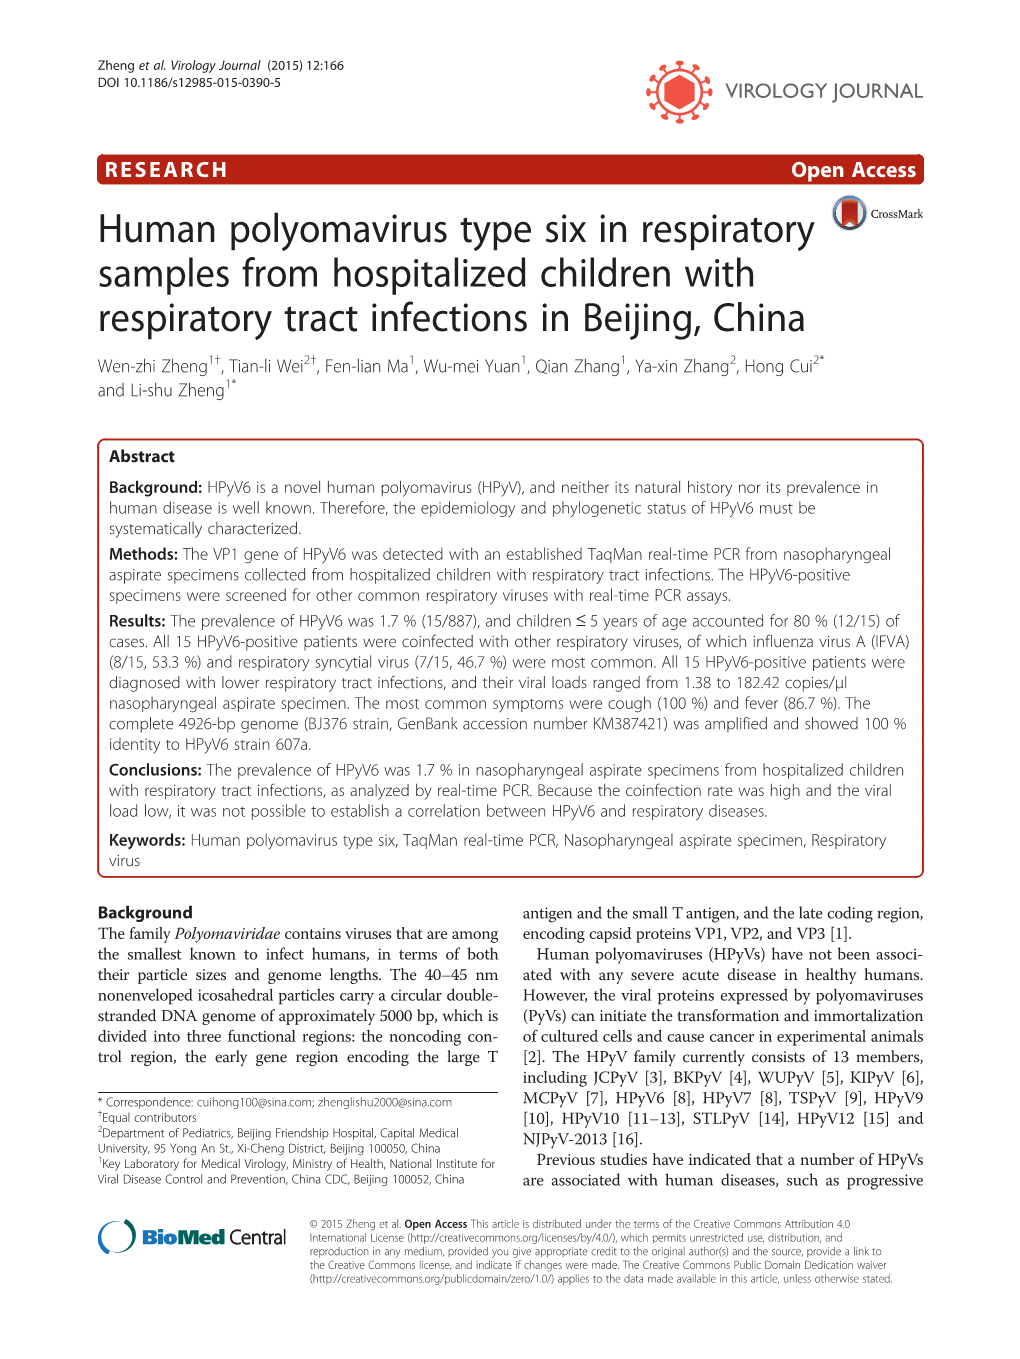 Human Polyomavirus Type Six in Respiratory Samples From